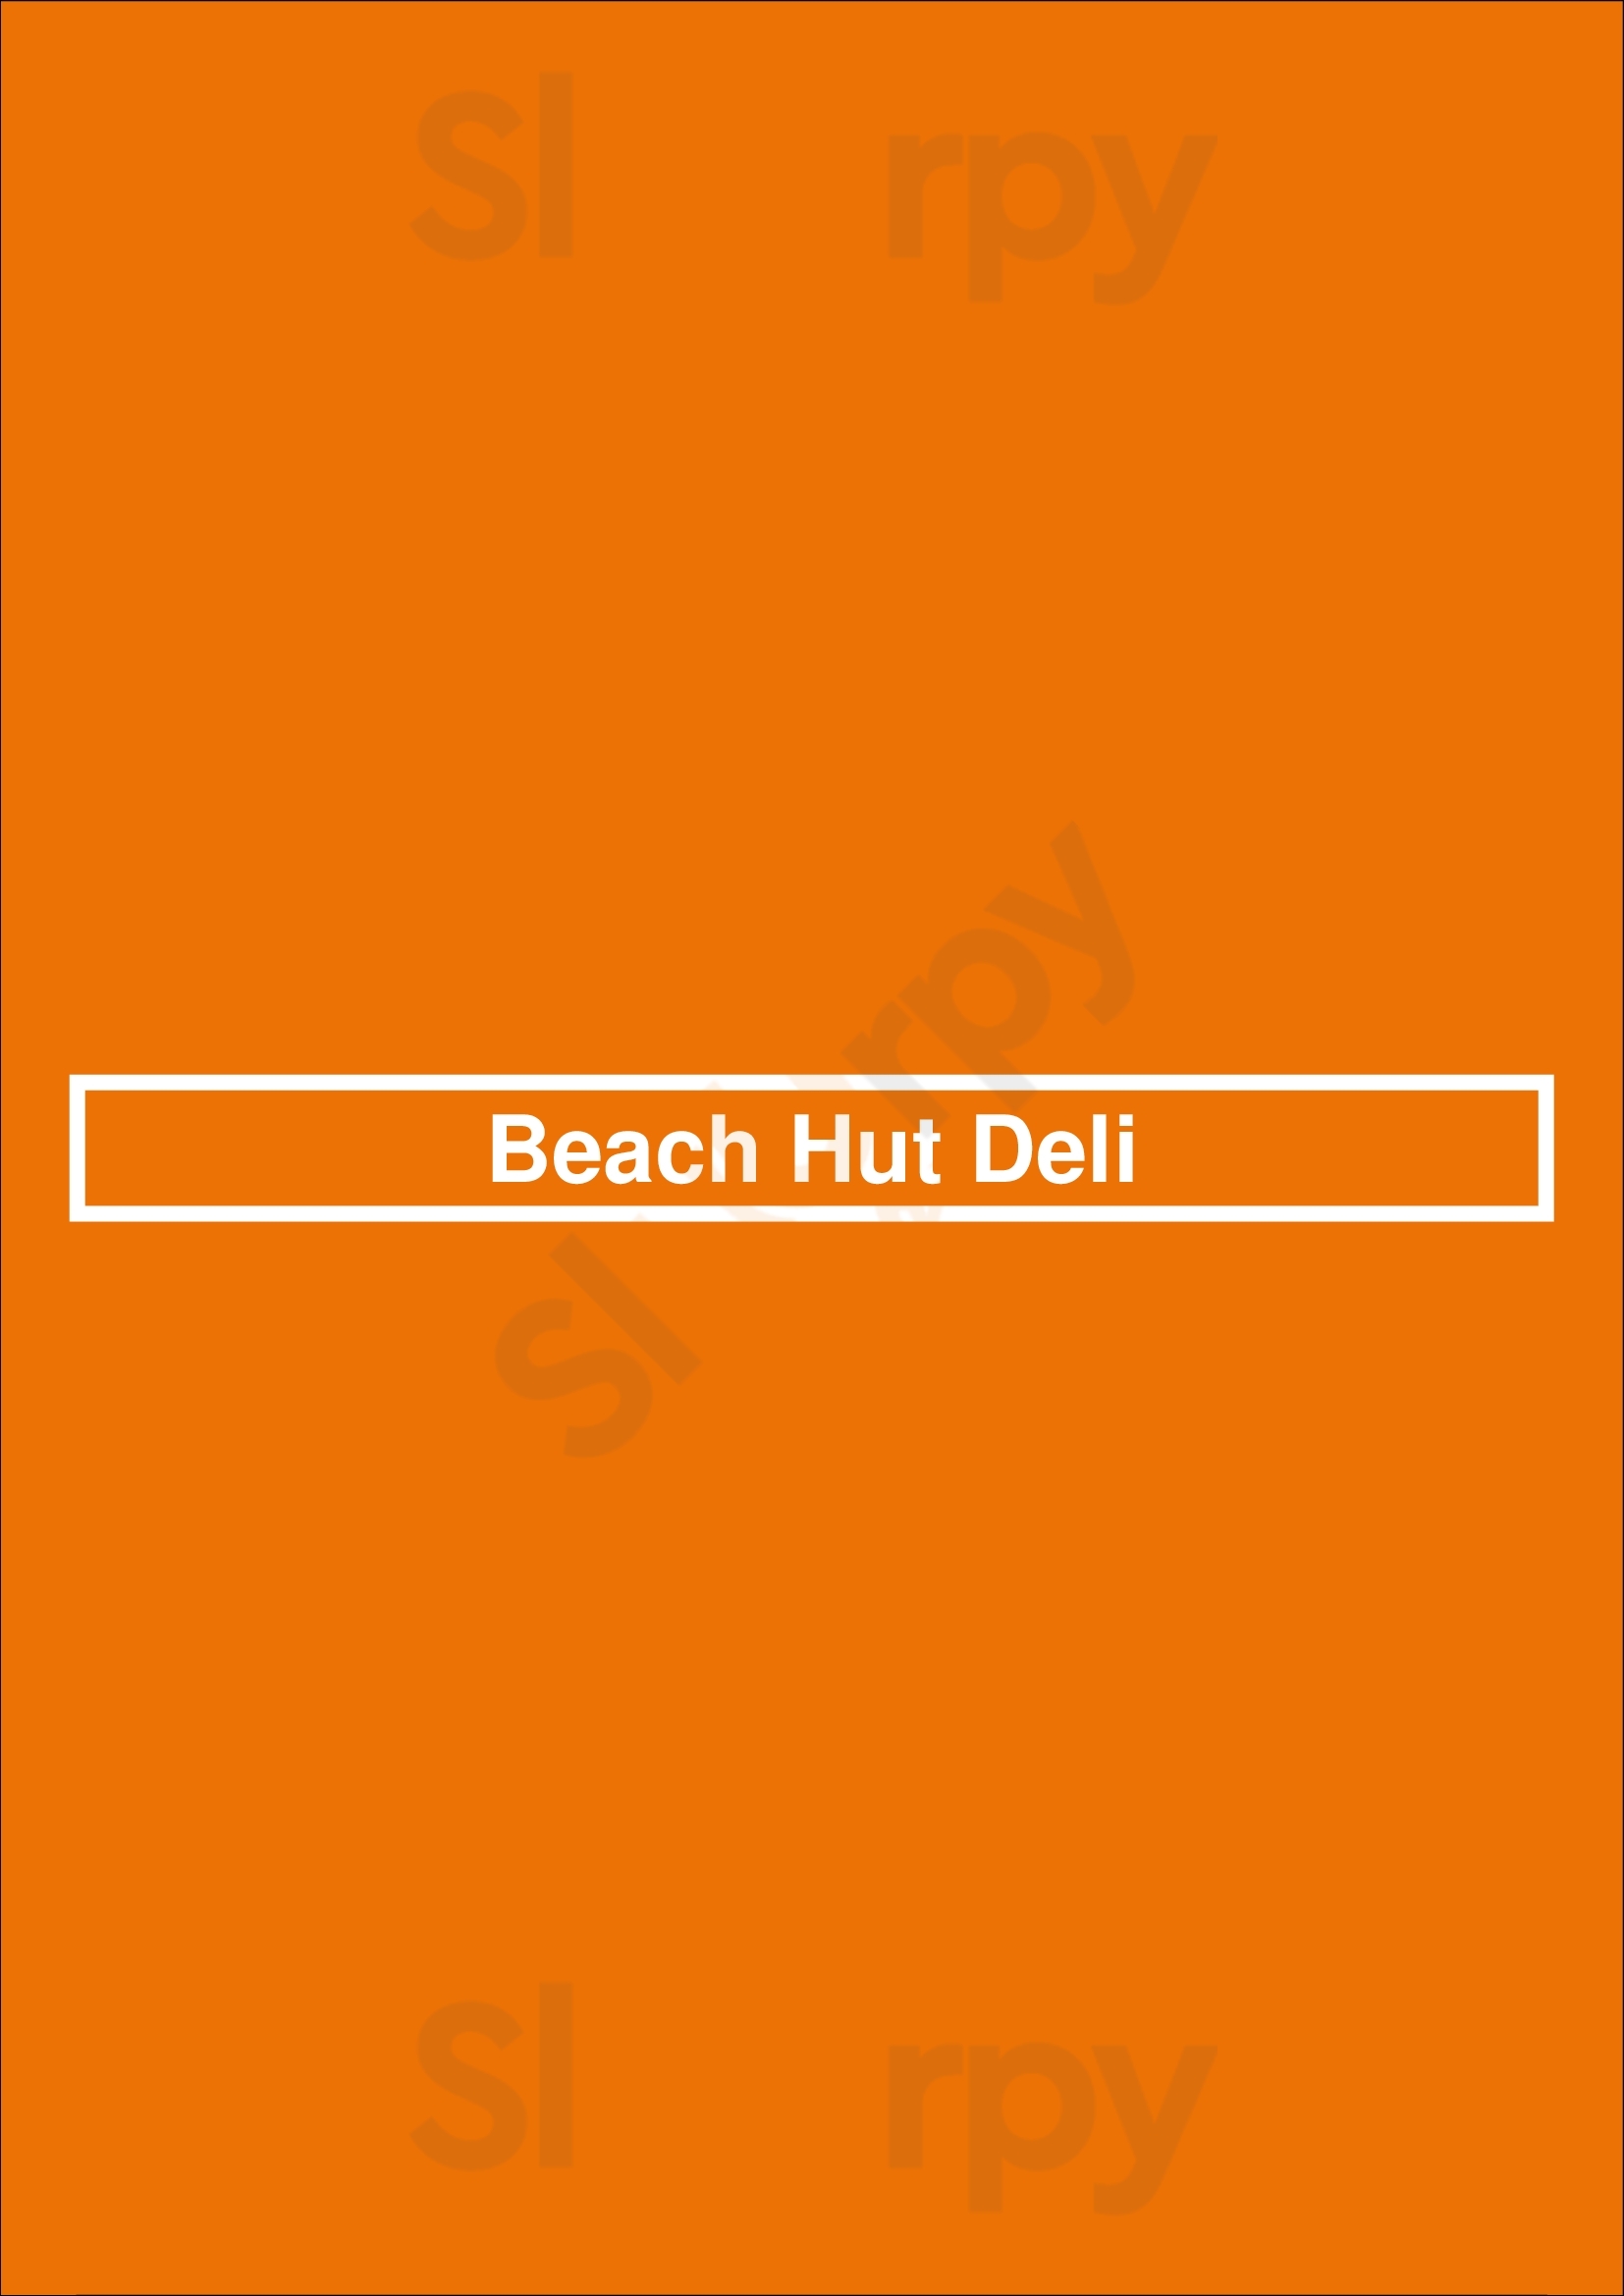 Beach Hut Deli Lincoln Menu - 1